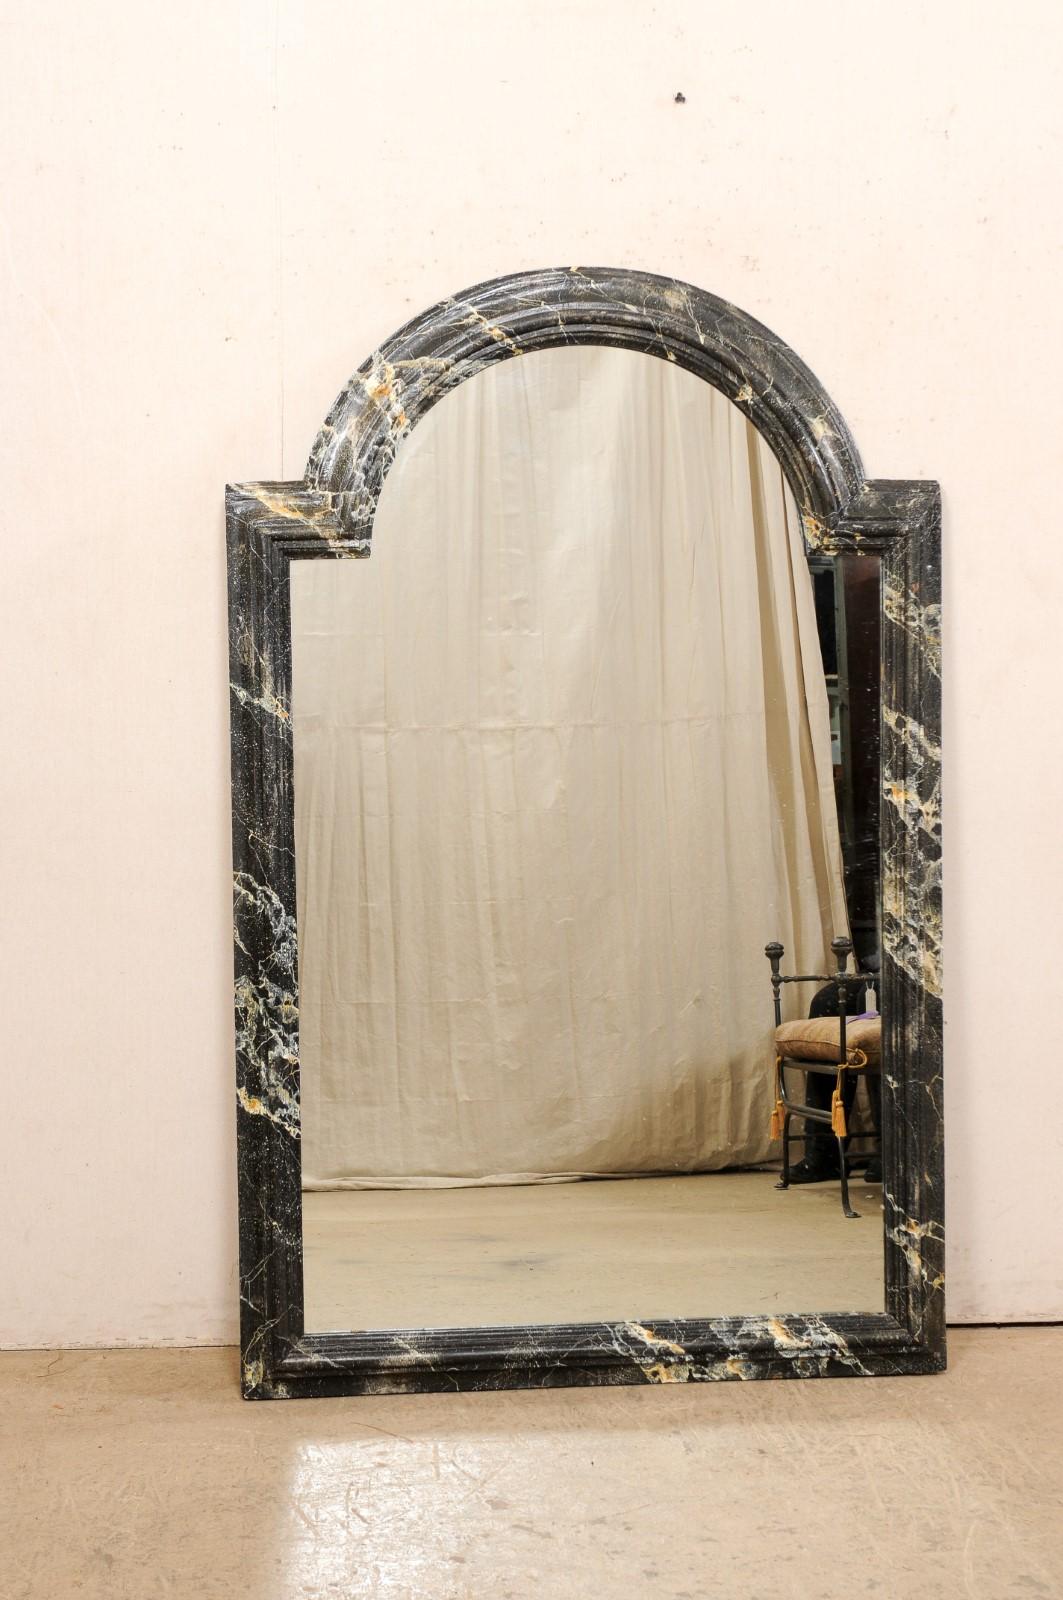 Miroir en bois sculpté et peint en faux marbre du XVIIIe siècle. Ce miroir ancien de France présente un cadre mouluré avec un sommet en arc convexe, les côtés et le bas étant constitués de lignes droites. Le cadre en bois présente une finition